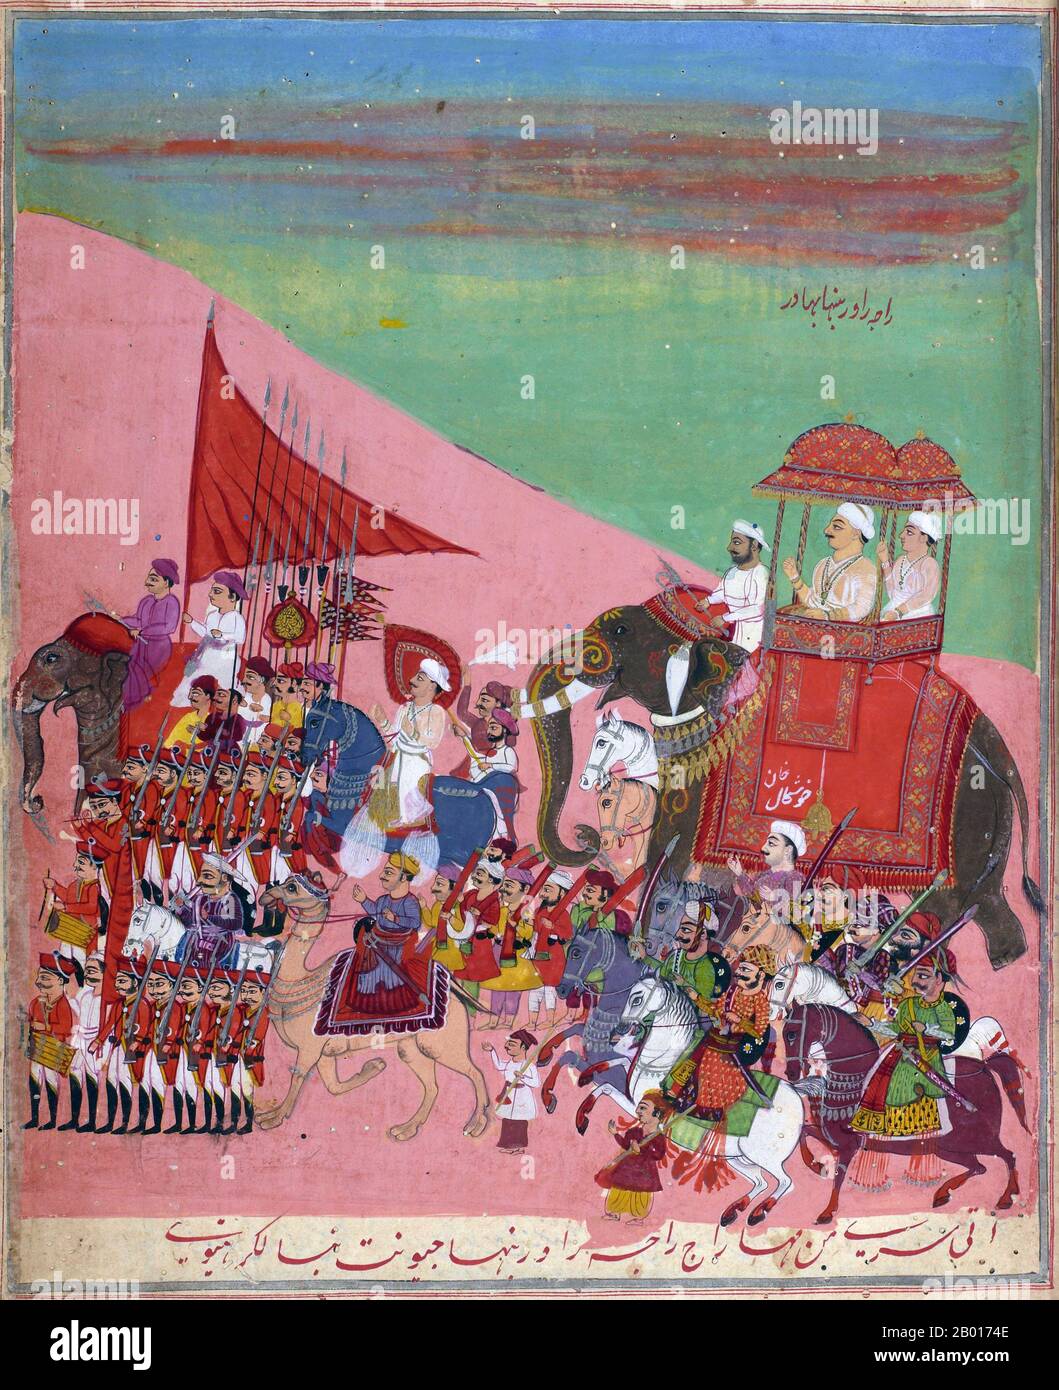 Inde: 'Raja Rao Rabanha Bahadur (sur l'éléphant), avec Khushal Khan (ci-dessous), et les soldats, conduits par un éléphant avec une bannière orange'.Peinture miniature Ragamala, c.1800. Les peintures de Ragamala sont une série de peintures illustratives de l'Inde médiévale basée sur Ragamala ou le "Garland de Ragas", représentant divers noeuds musicaux indiens, Ragas.Ils sont un exemple classique de la fusion de l'art, de la poésie et de la musique classique dans l'Inde médiévale.Les peintures de Ragamala ont été créées dans la plupart des écoles de peinture indienne, à partir des XVIe et XVIIe siècles. Banque D'Images